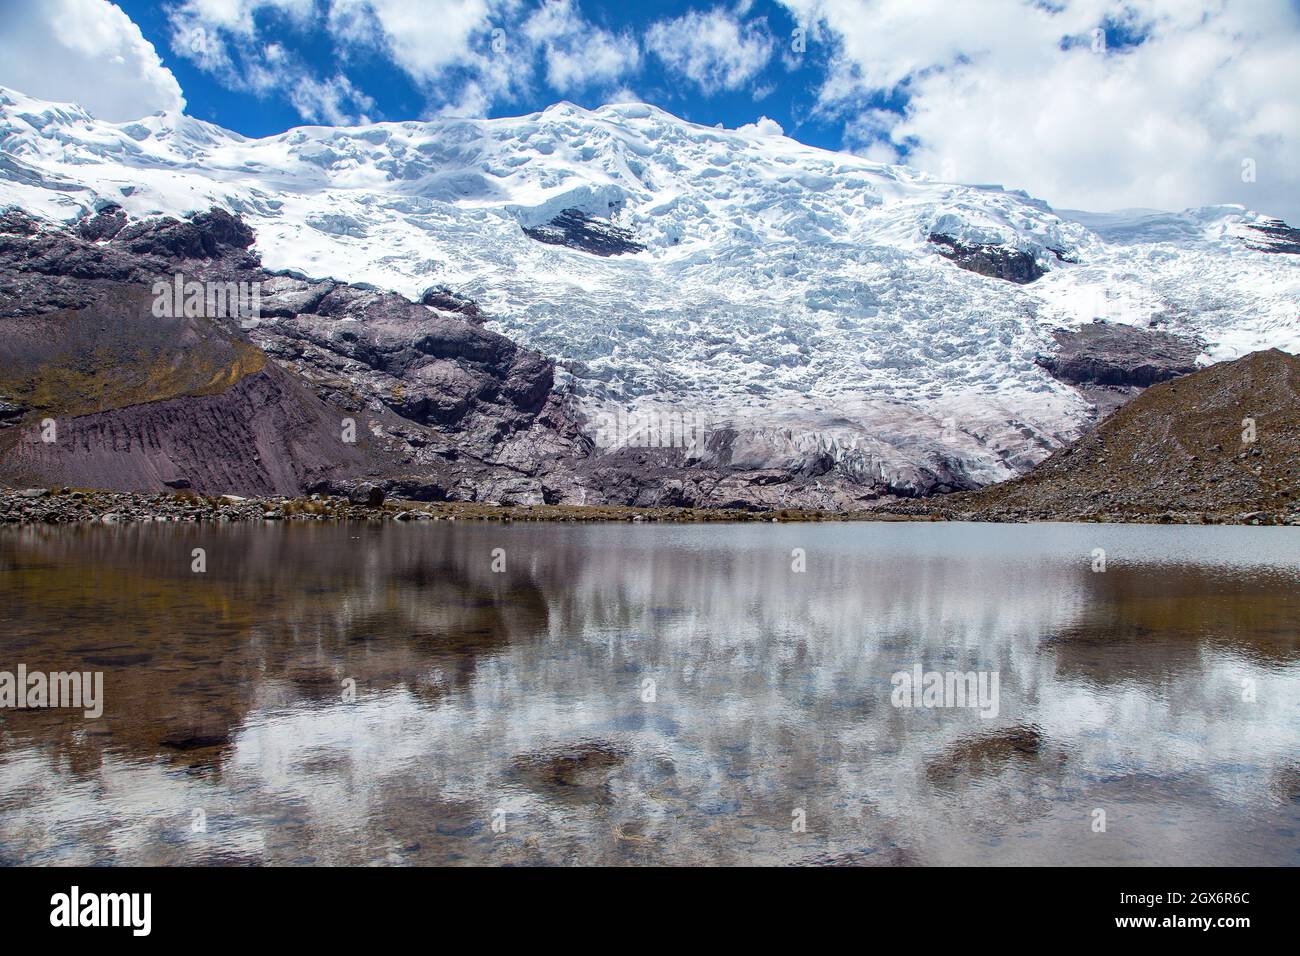 Ausangate Trek Trekking Trail, Moutain mit See und Gletscher, Ausangate Circuit, Cordillera Vilcanota, Cuzco Region, Peru, Peruanische Andenlandschaft, Stockfoto